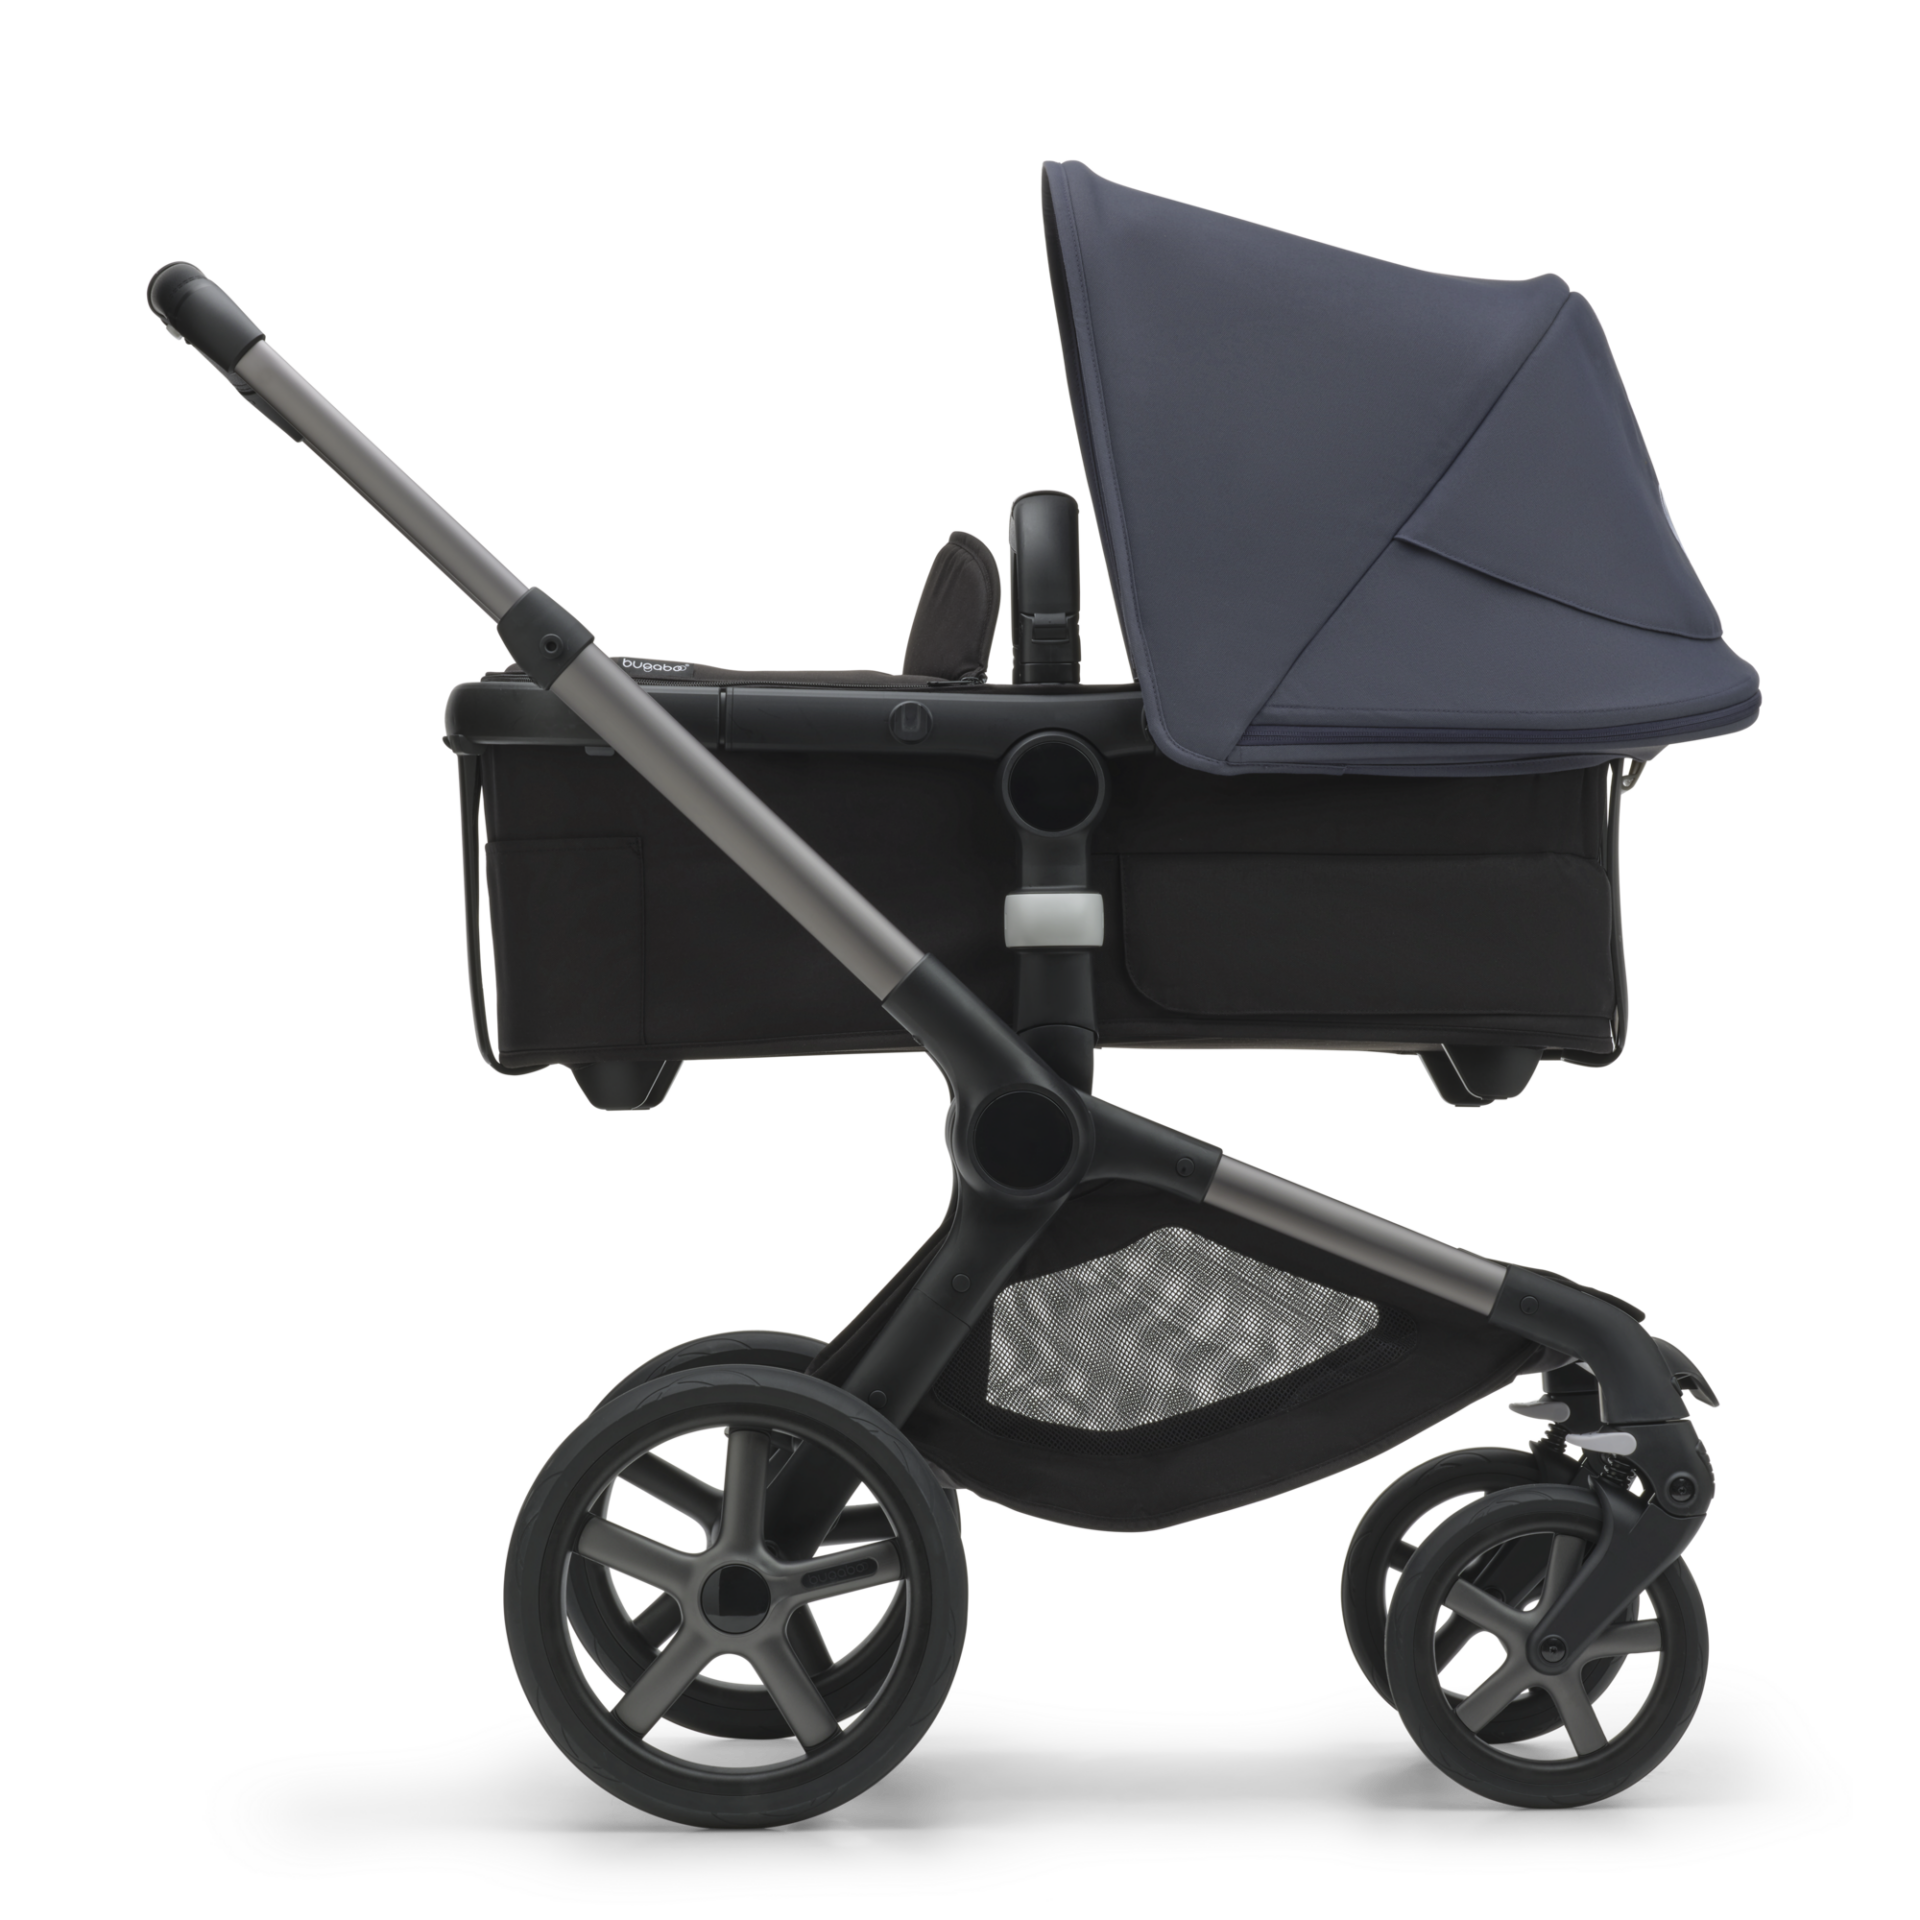 Bugaboo Fox 5 barnvagn med sittdel och liggdel – Bugaboo